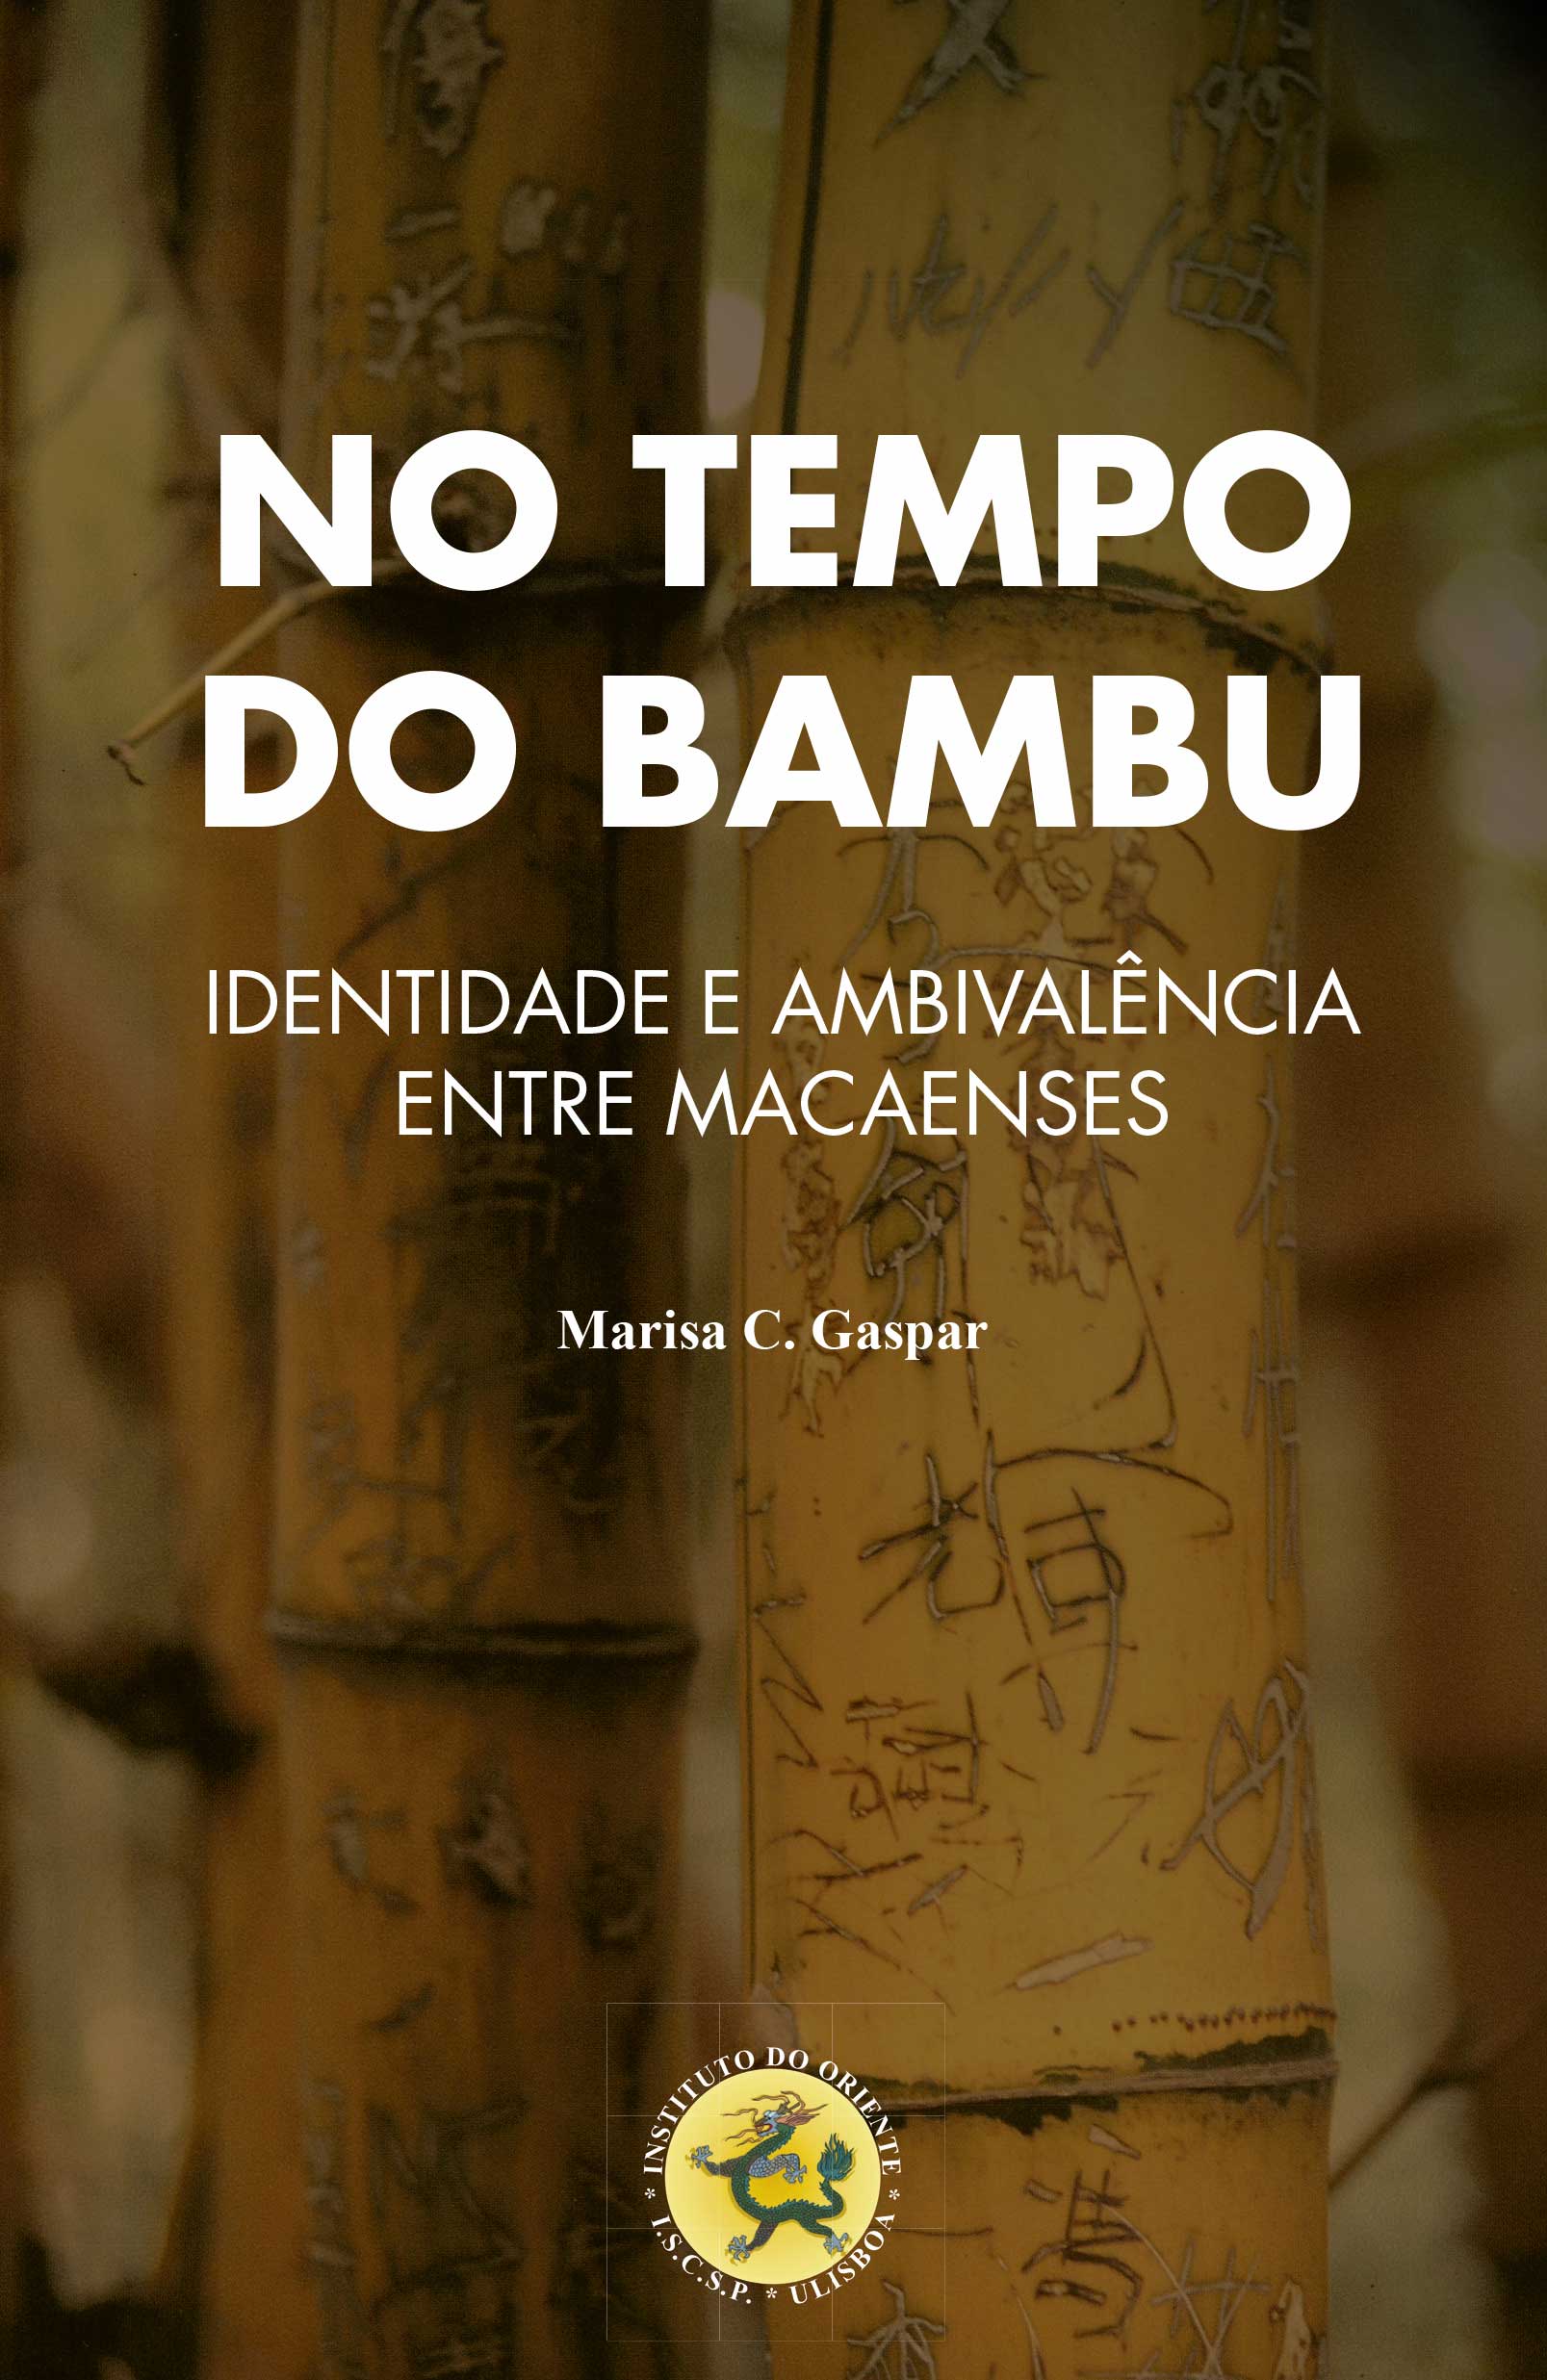 No Tempo do Bambu: Identidade e Ambivalência entre Macaenses